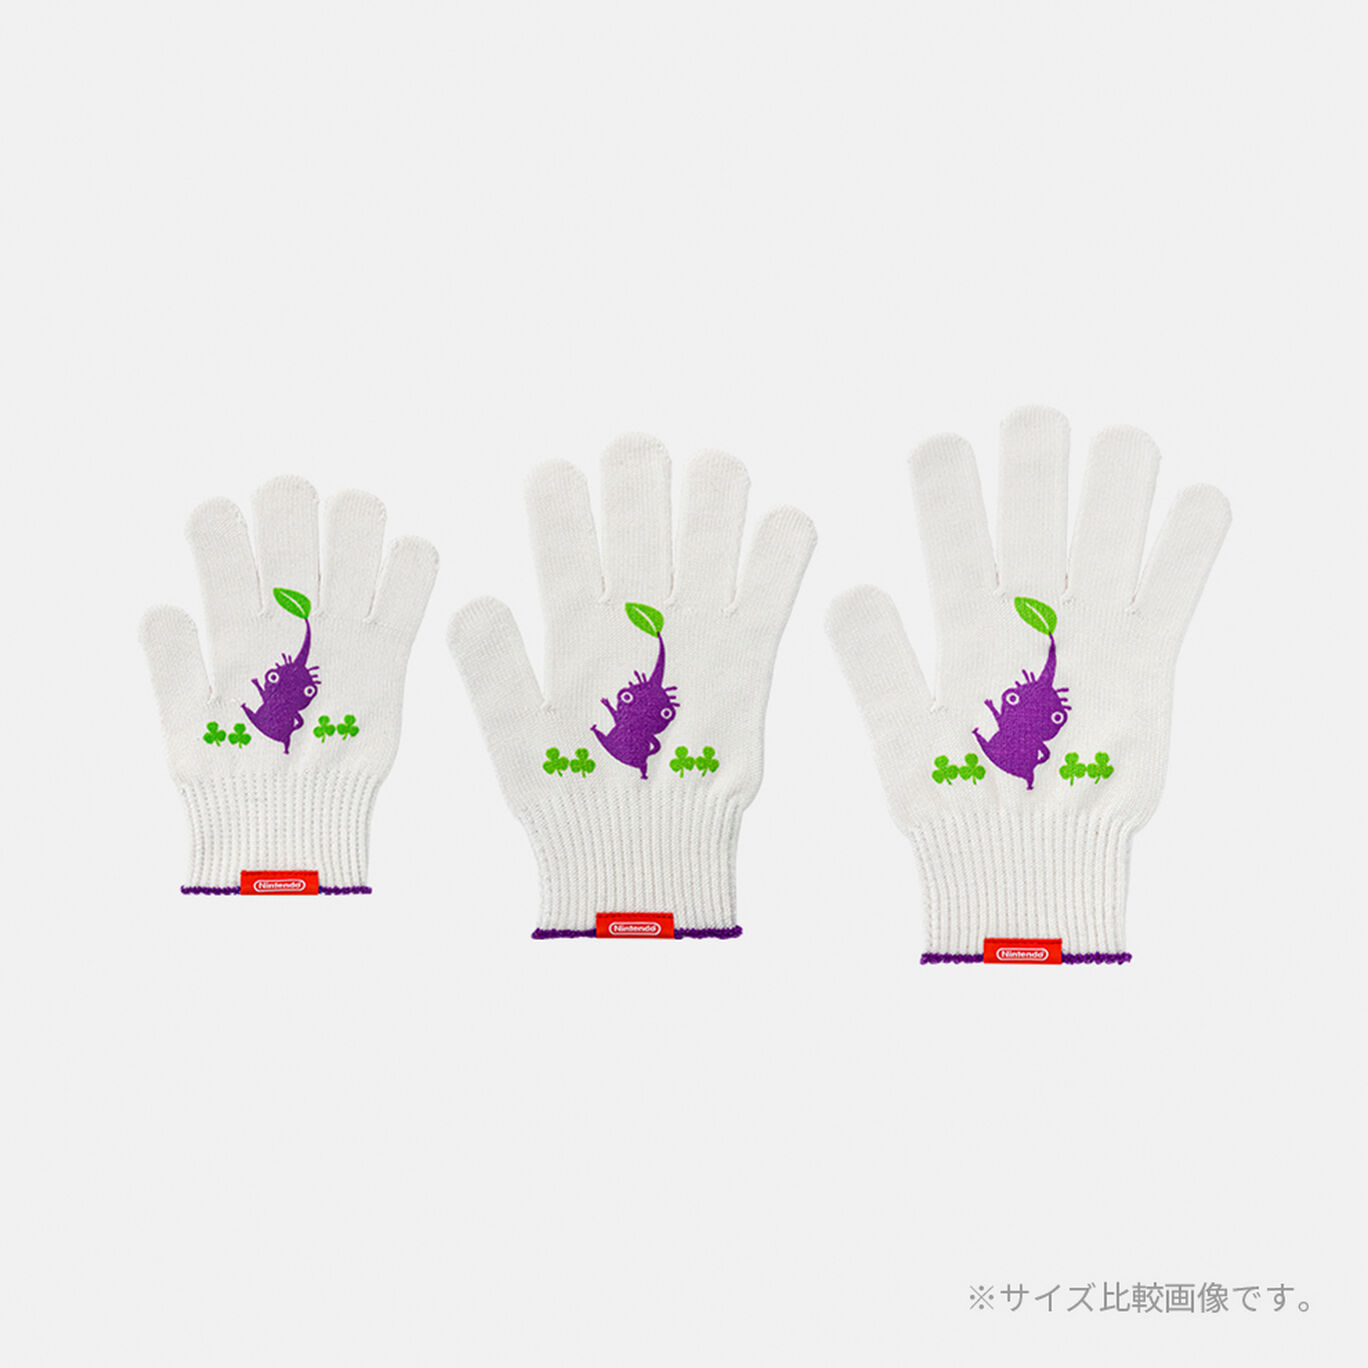 軍手 力持ちの紫ピクミン L PIKMIN【Nintendo TOKYO取り扱い商品】